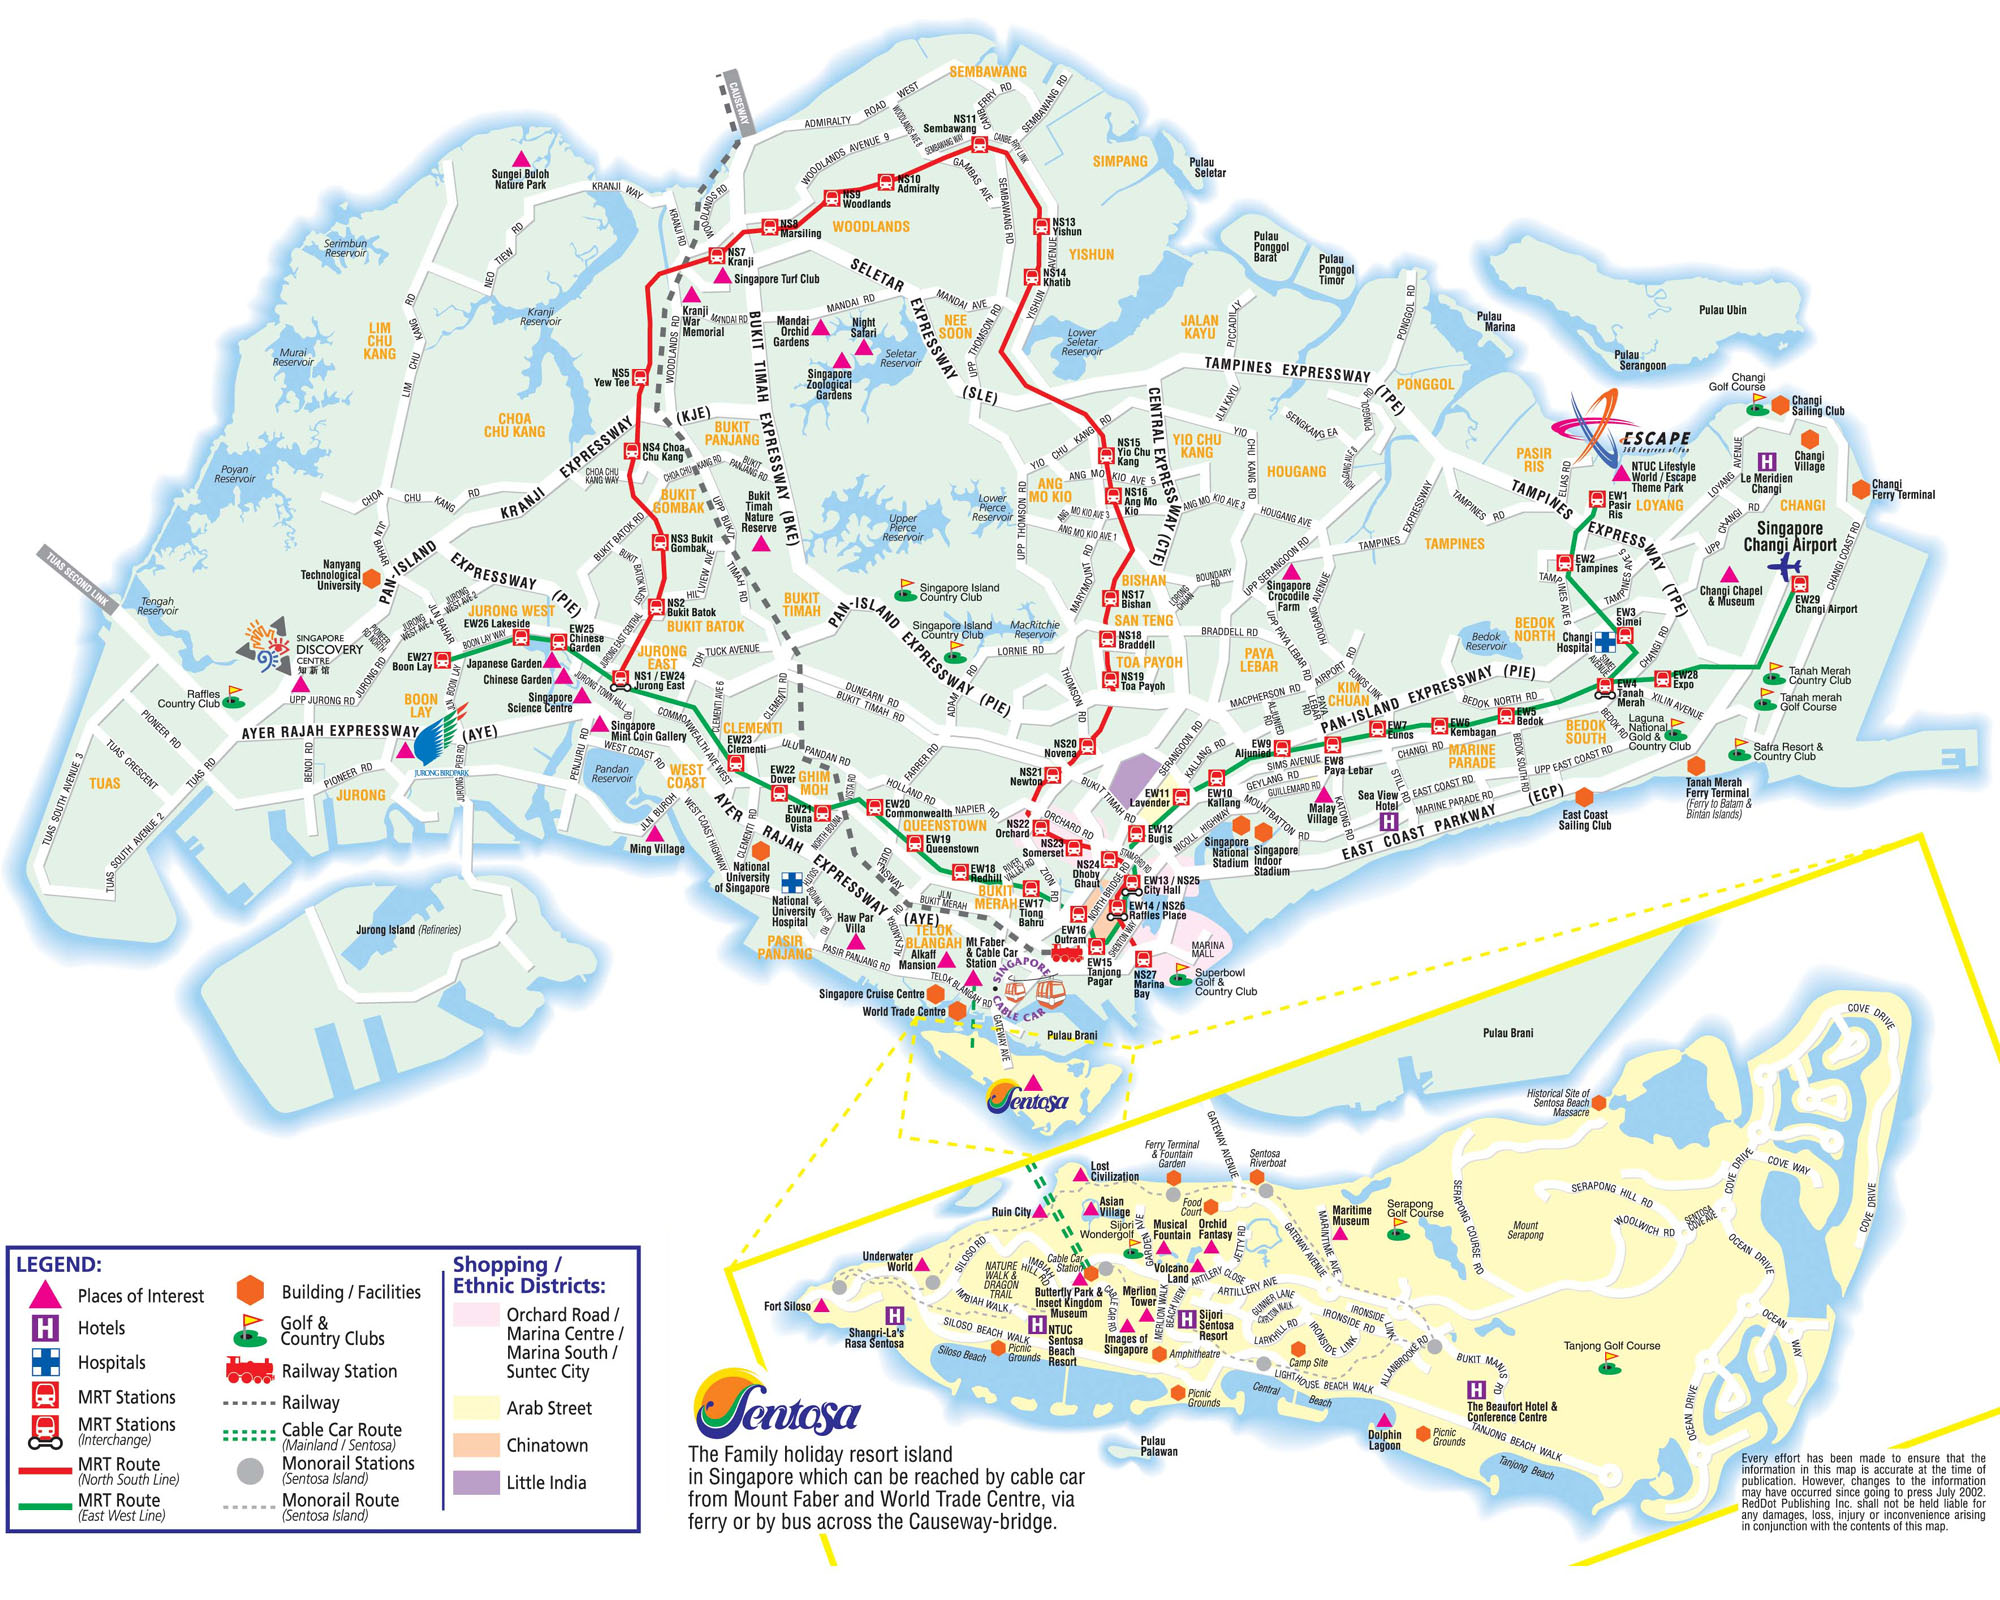 singapur turist haritasi